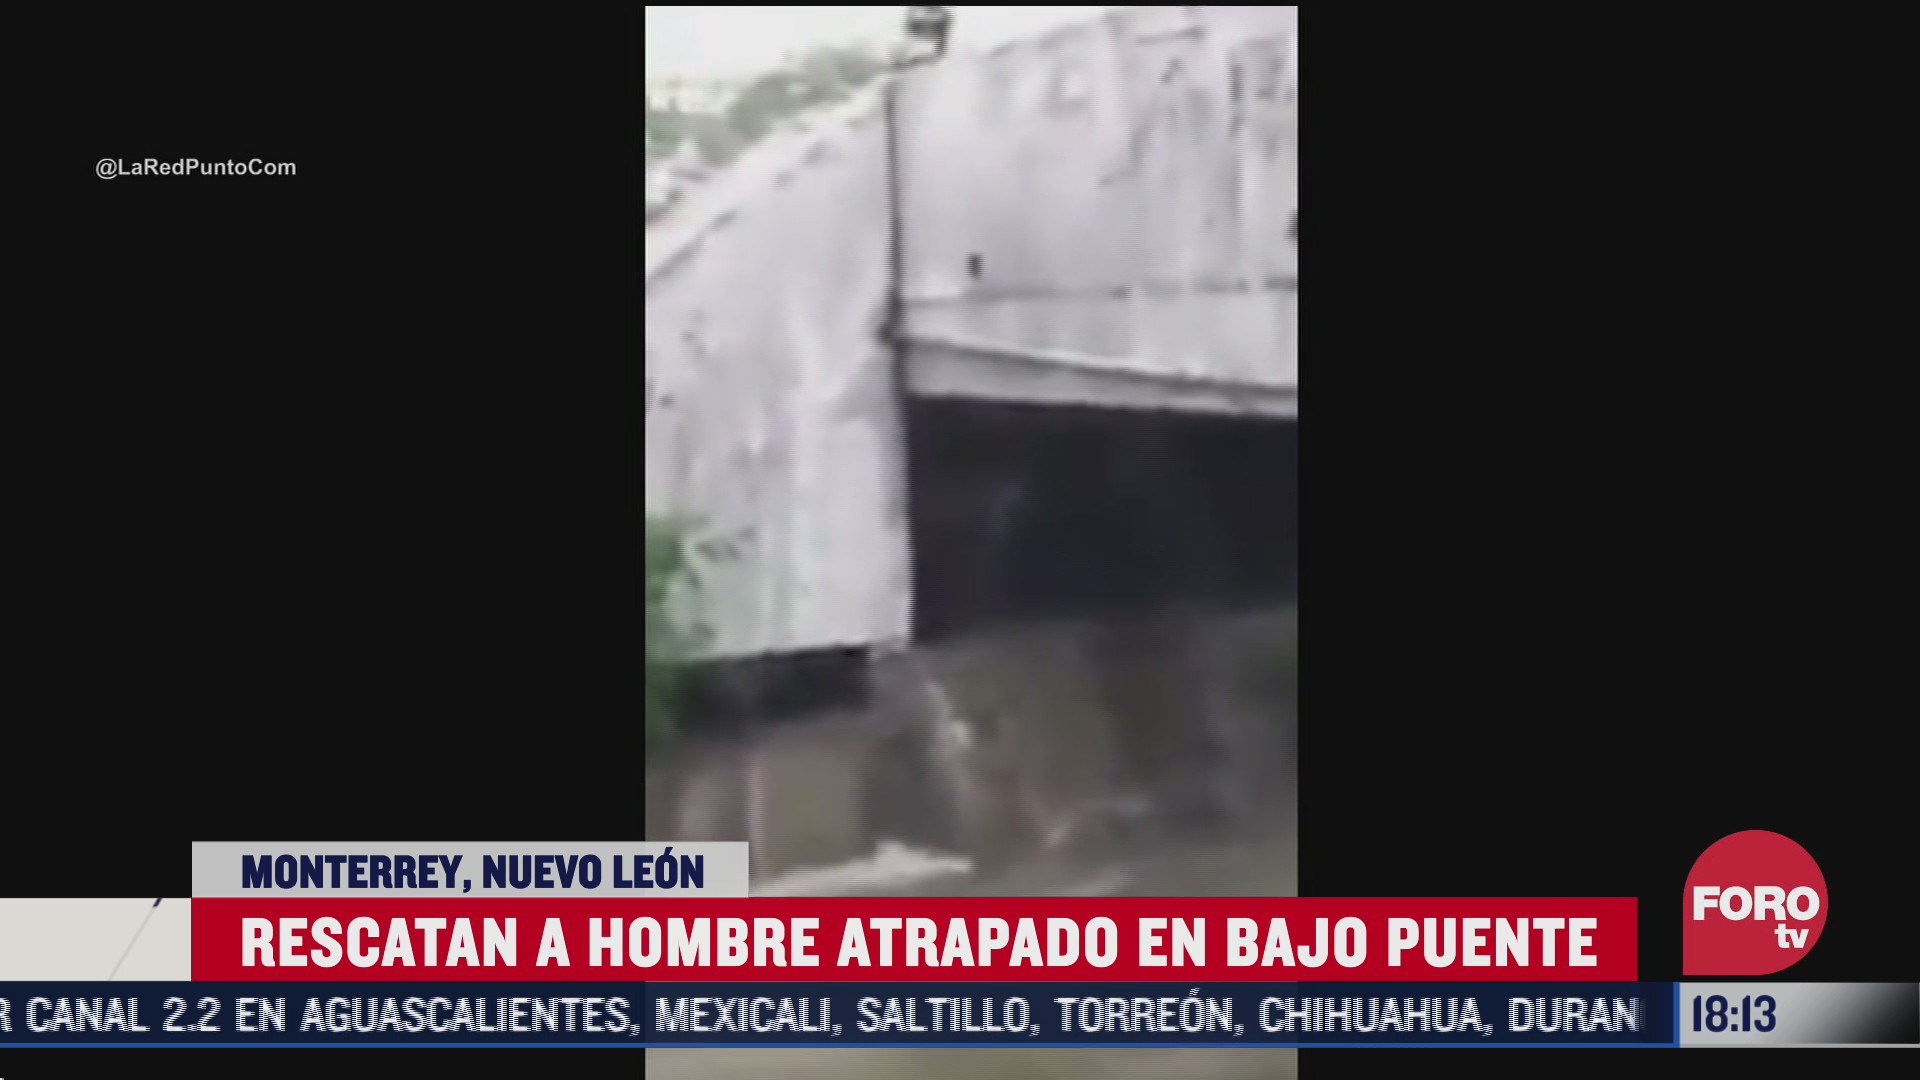 FOTO: 26 de julio 2020, rescatan a hombre atrapado en bajo puente en nuevo leon